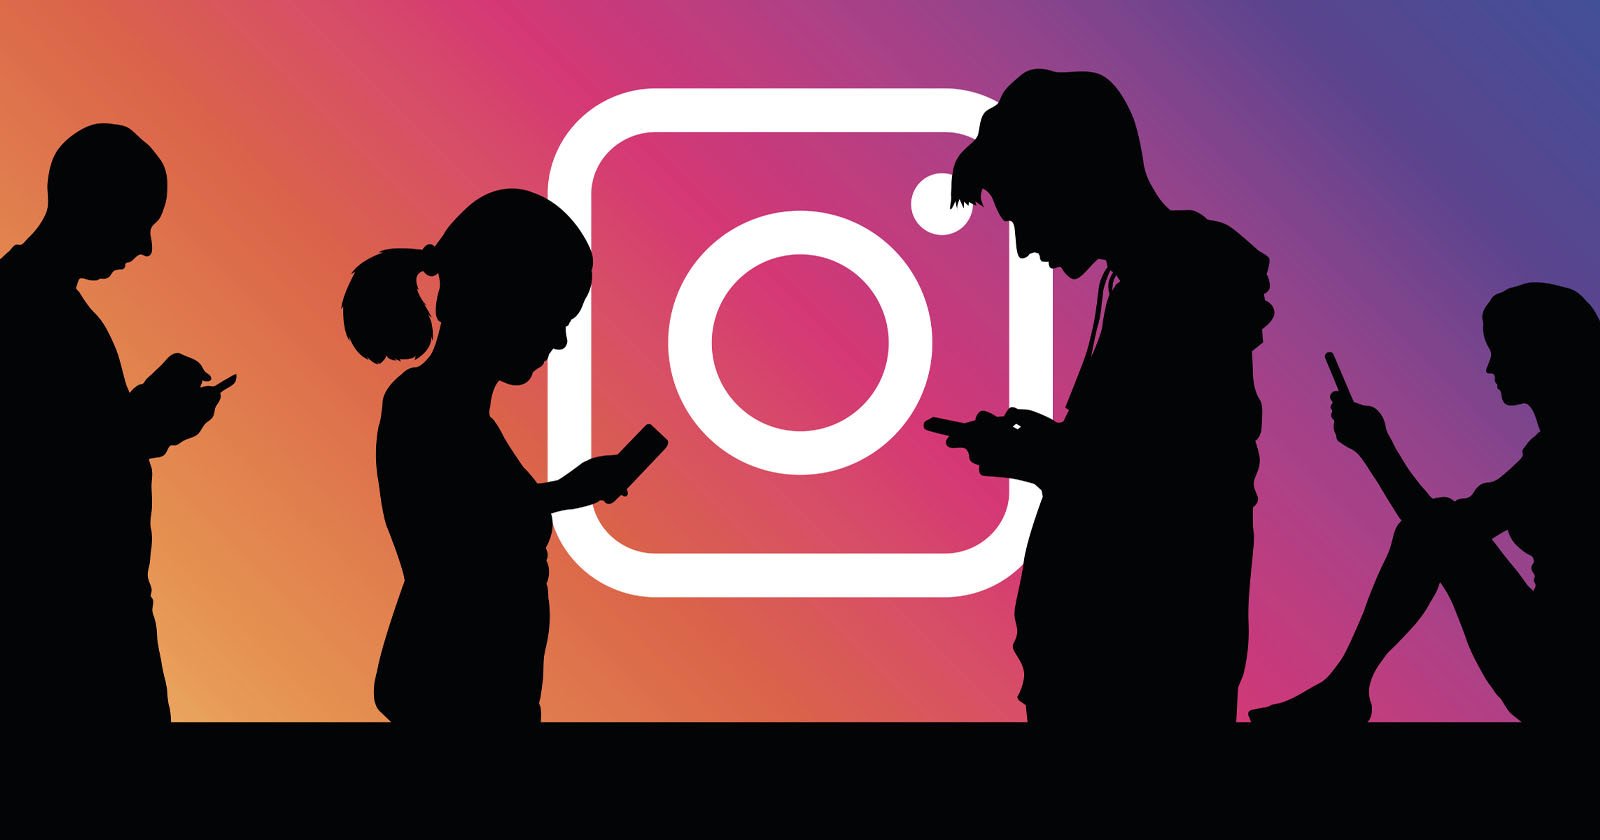 Instagram Tweaks its Algorithm to Value Original Content More